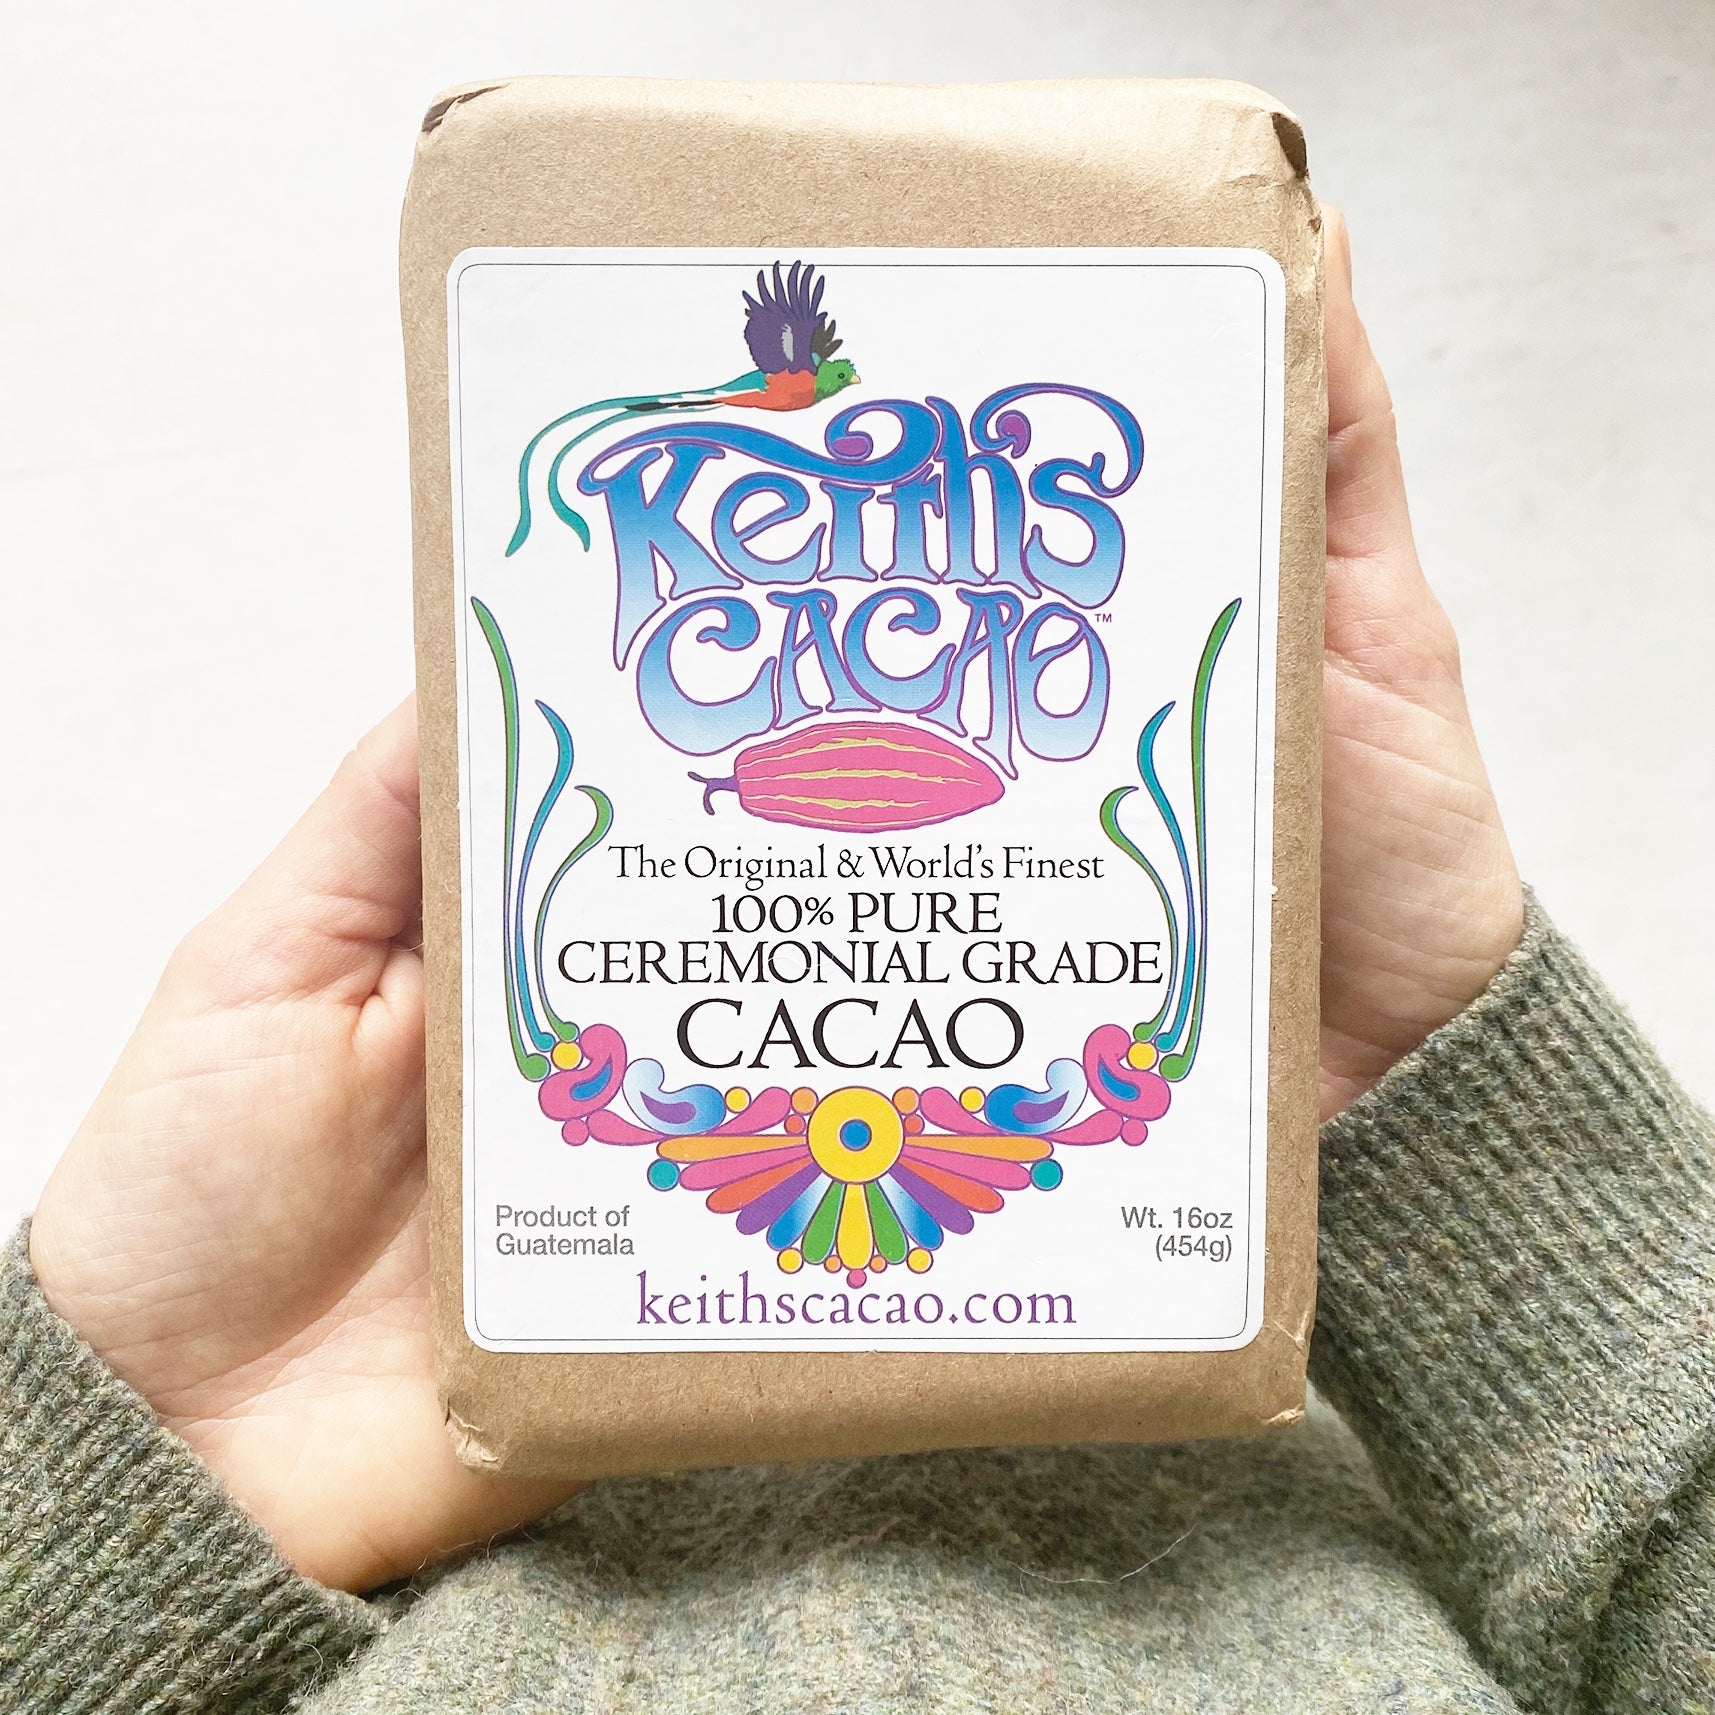 Der weltweit feinste 100% reiner Ceremonial Grade Cacao aus Guatemala. Keith's Cacao ist ein kraftvoller Herzöffner und pflanzlicher Superfood welcher Geist, Körper und Seele stärken.